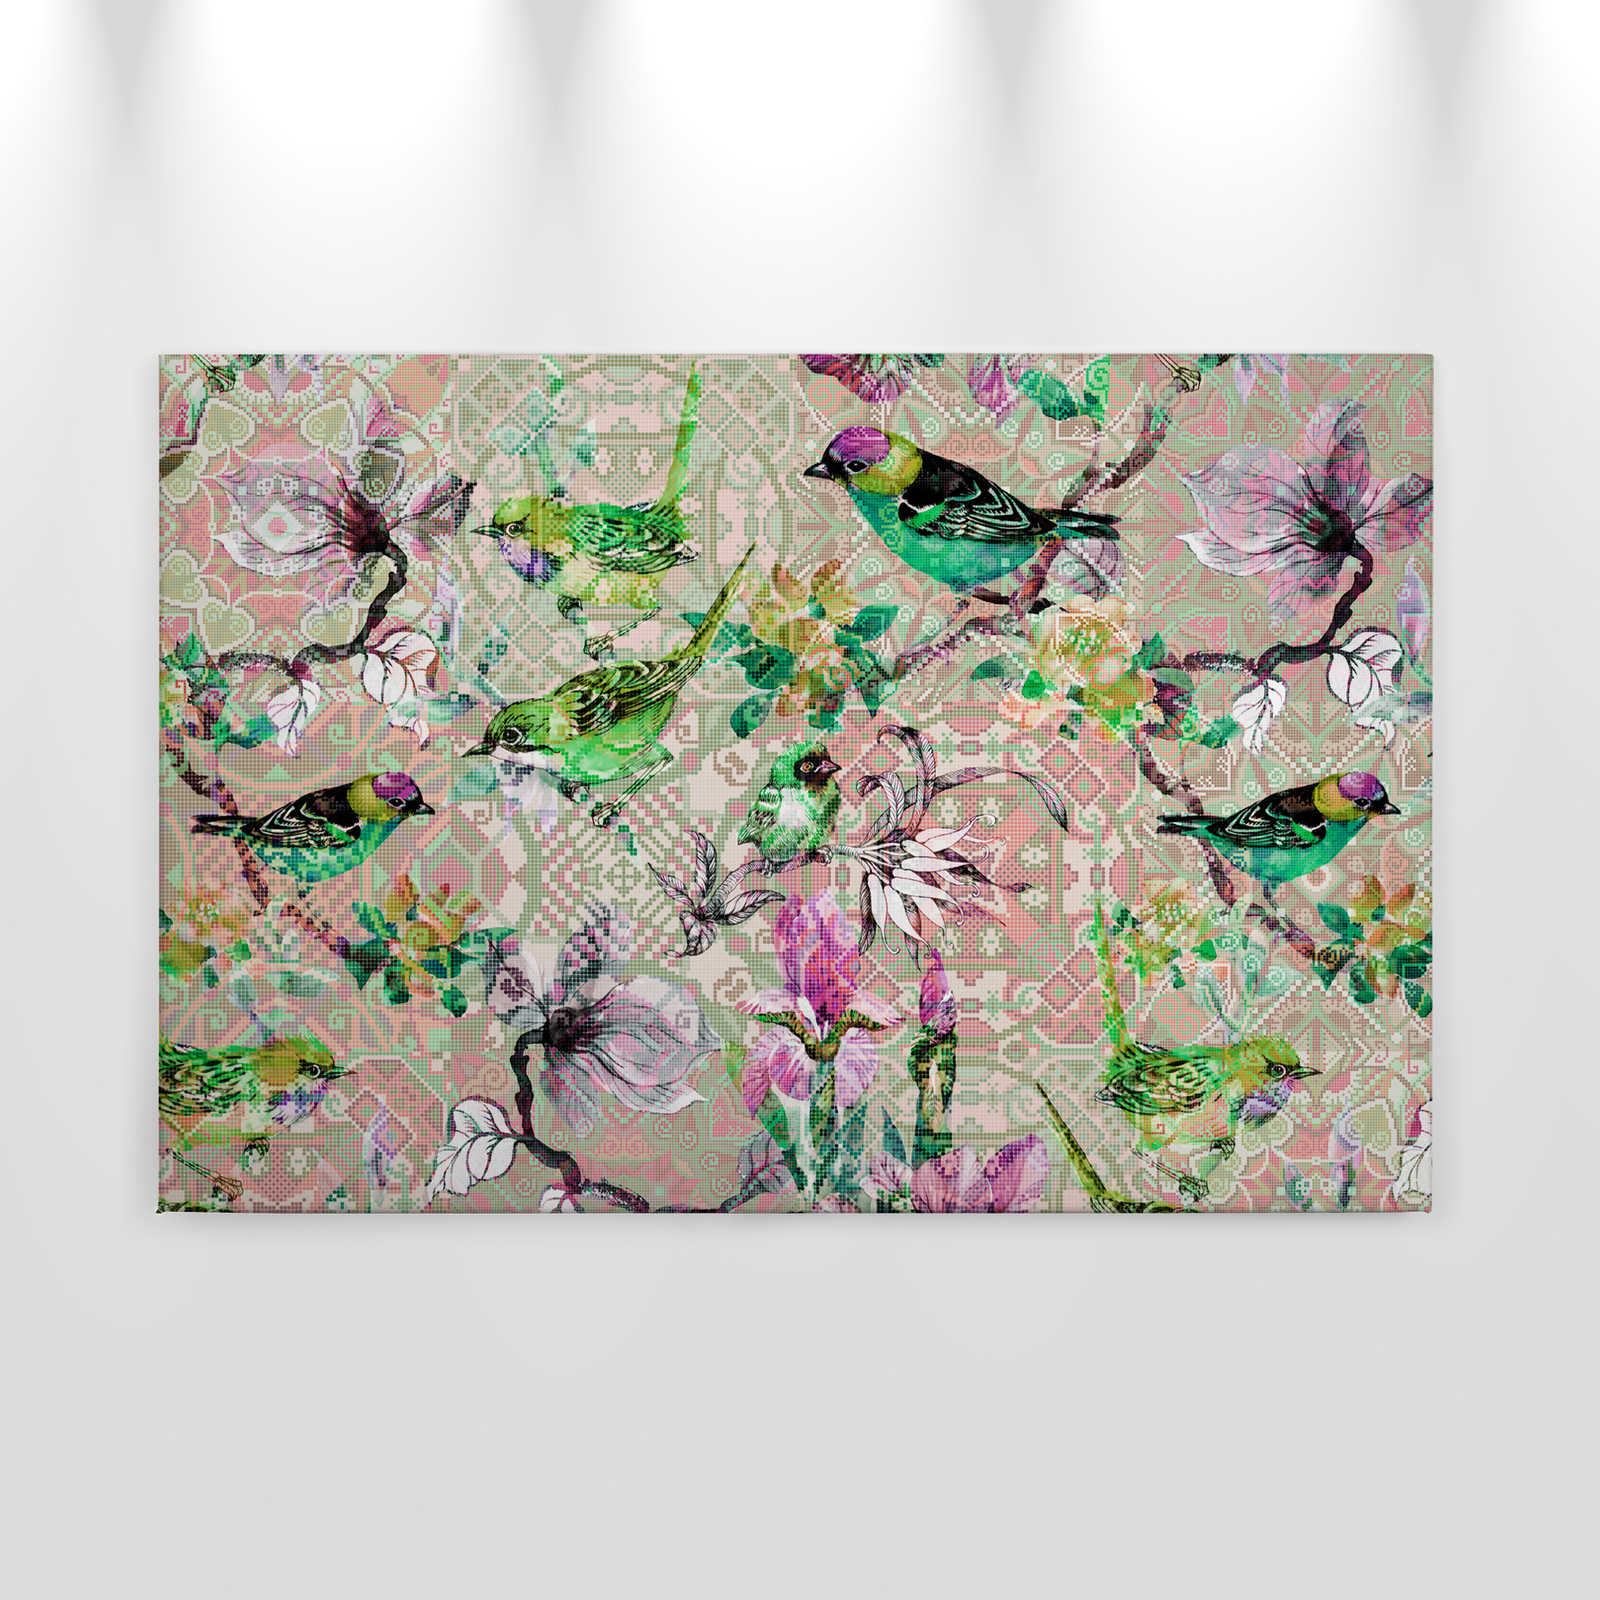             Oiseau toile avec motif mosaïque | mosaic birds 2 - 0,90 m x 0,60 m
        